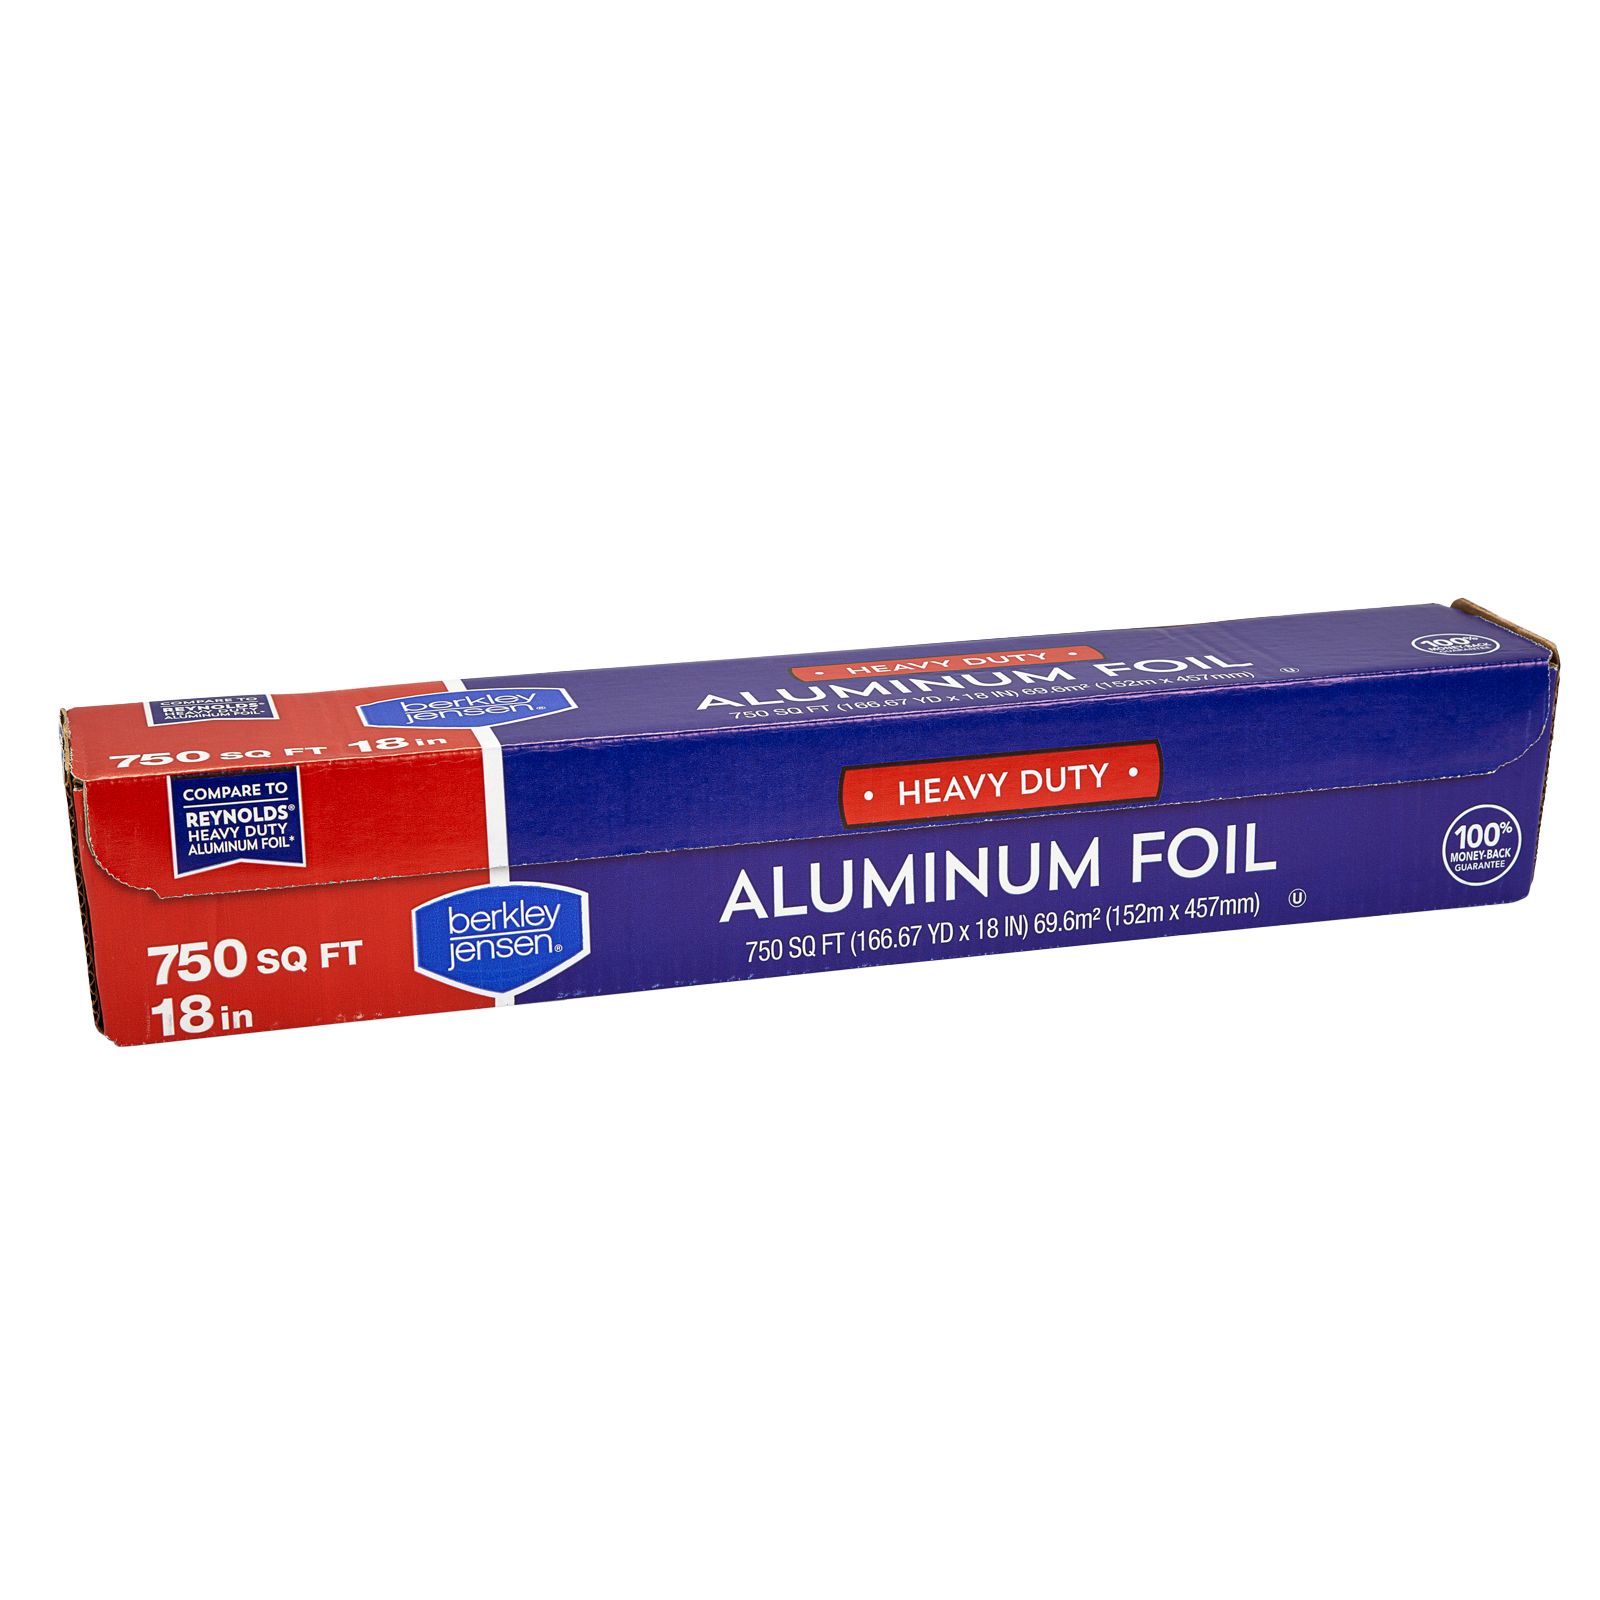 Durable Heavy Duty Aluminum Foil Roll, 12 Width x 500' Length